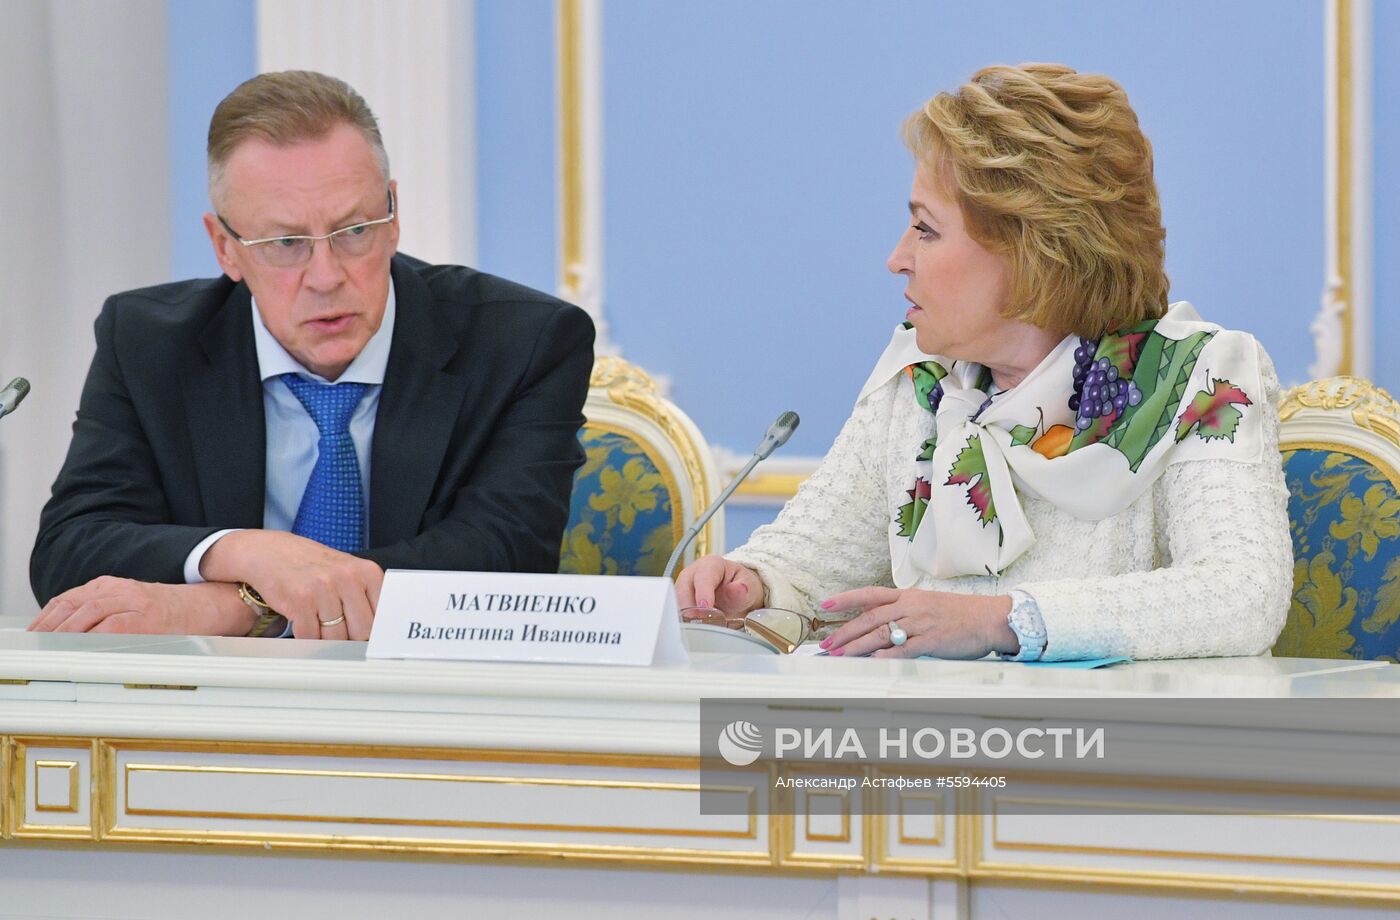 Премьер-министр РФ Д. Медведев провел встречу с членами Совета палаты Совета Федерации